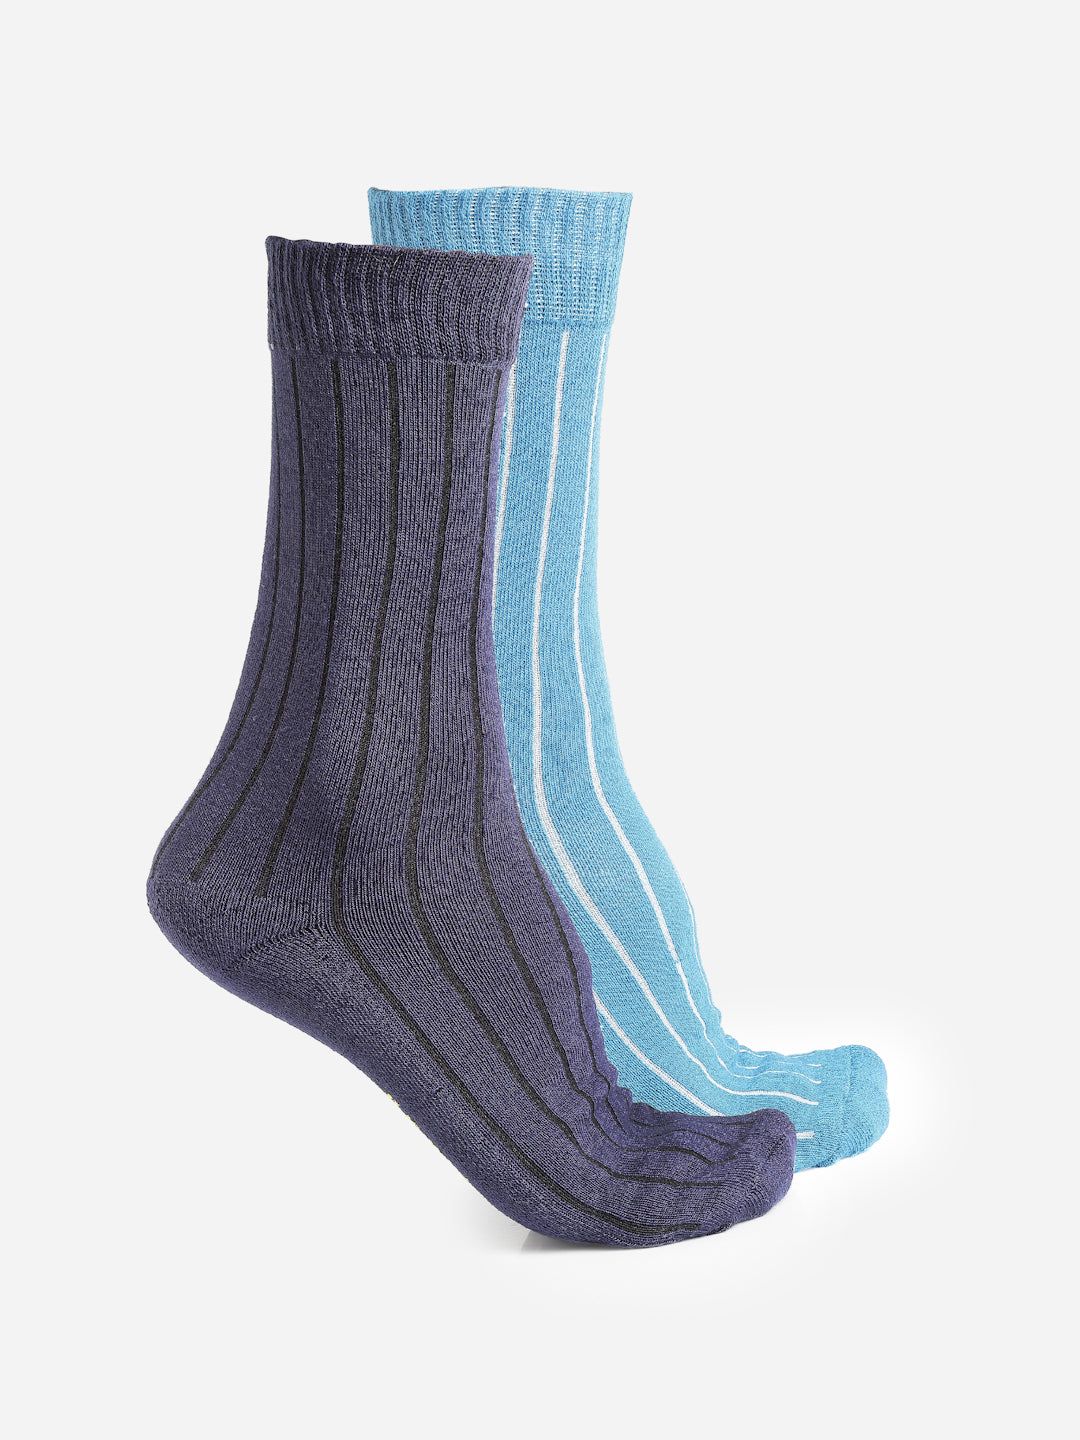 Men's Calf Length Socks